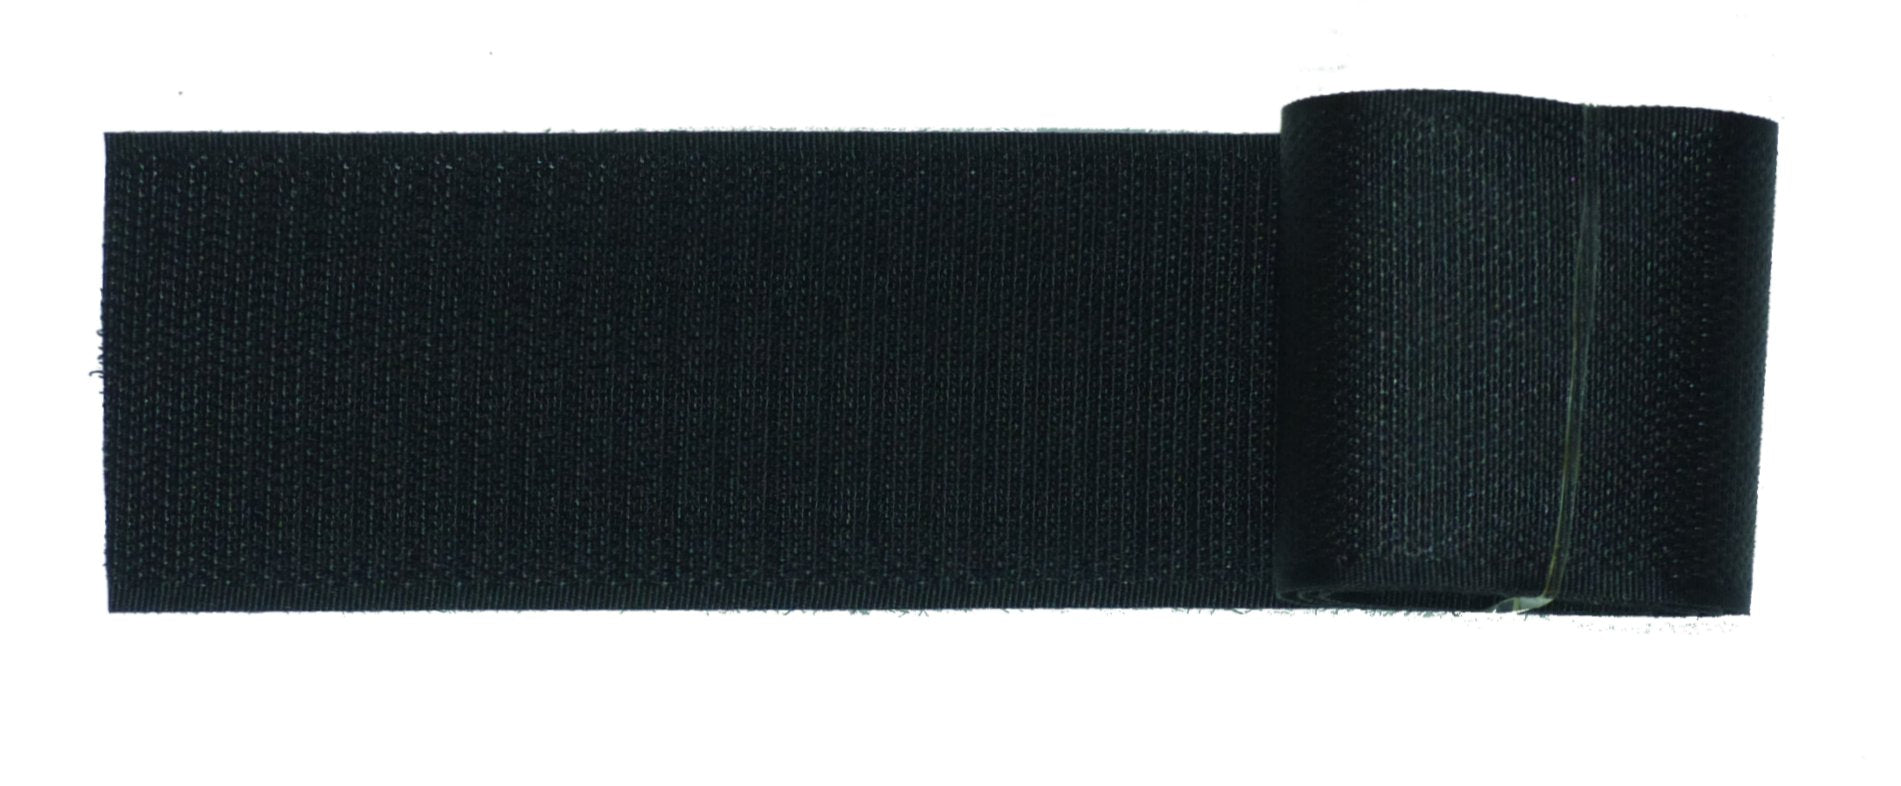 Benristraps 50mm sewable hook tape in black